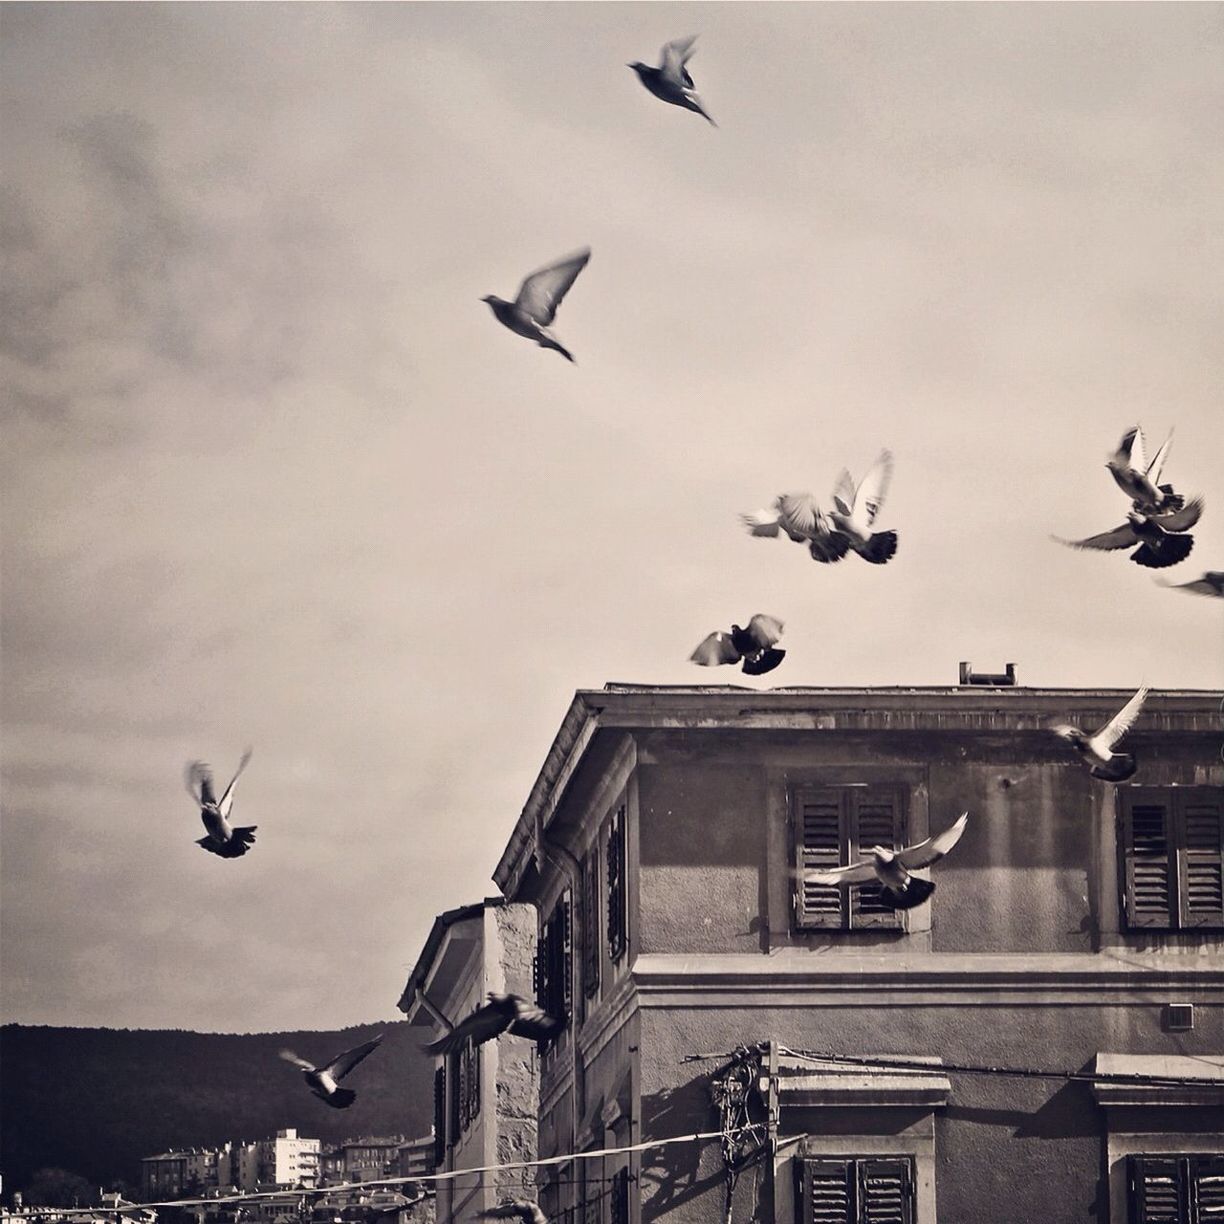 Birds flying against buildings